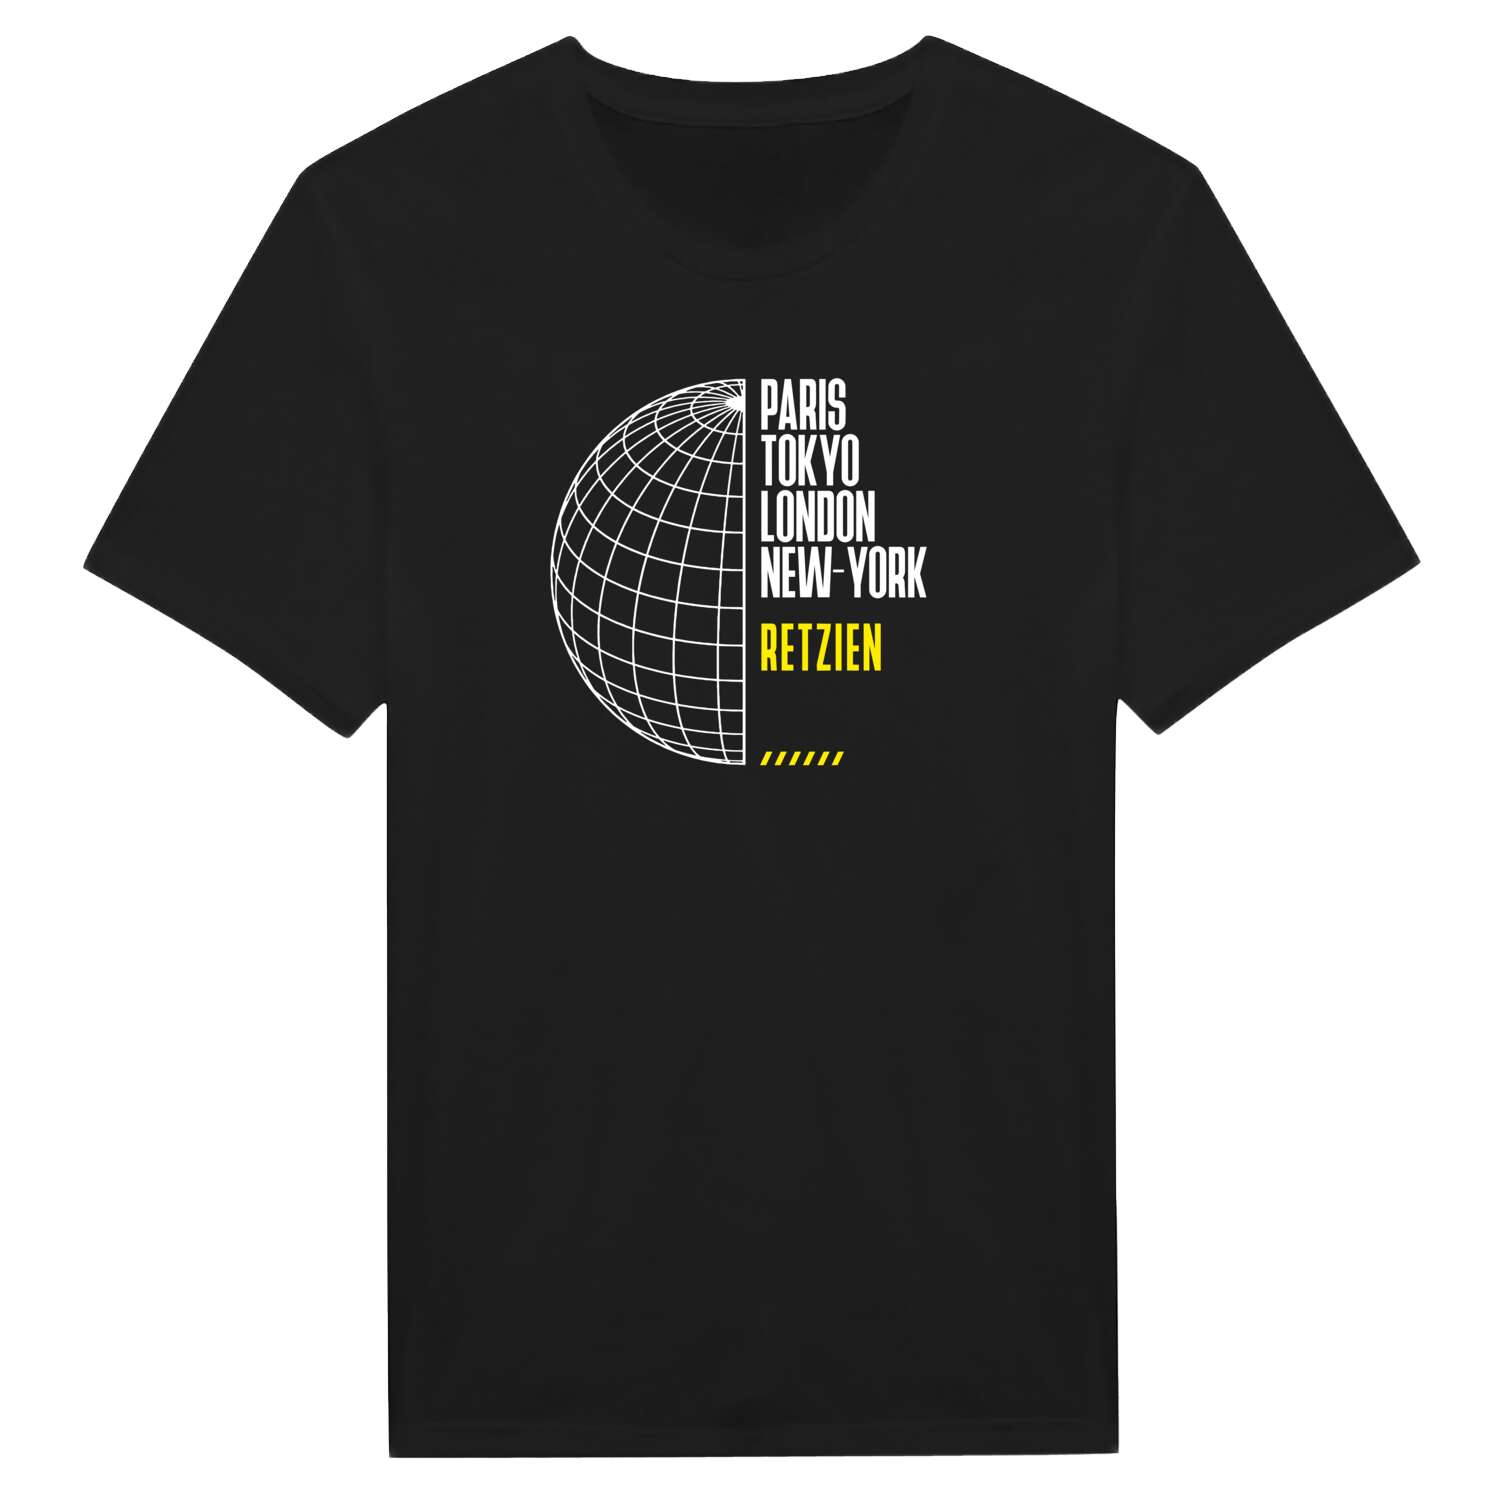 Retzien T-Shirt »Paris Tokyo London«